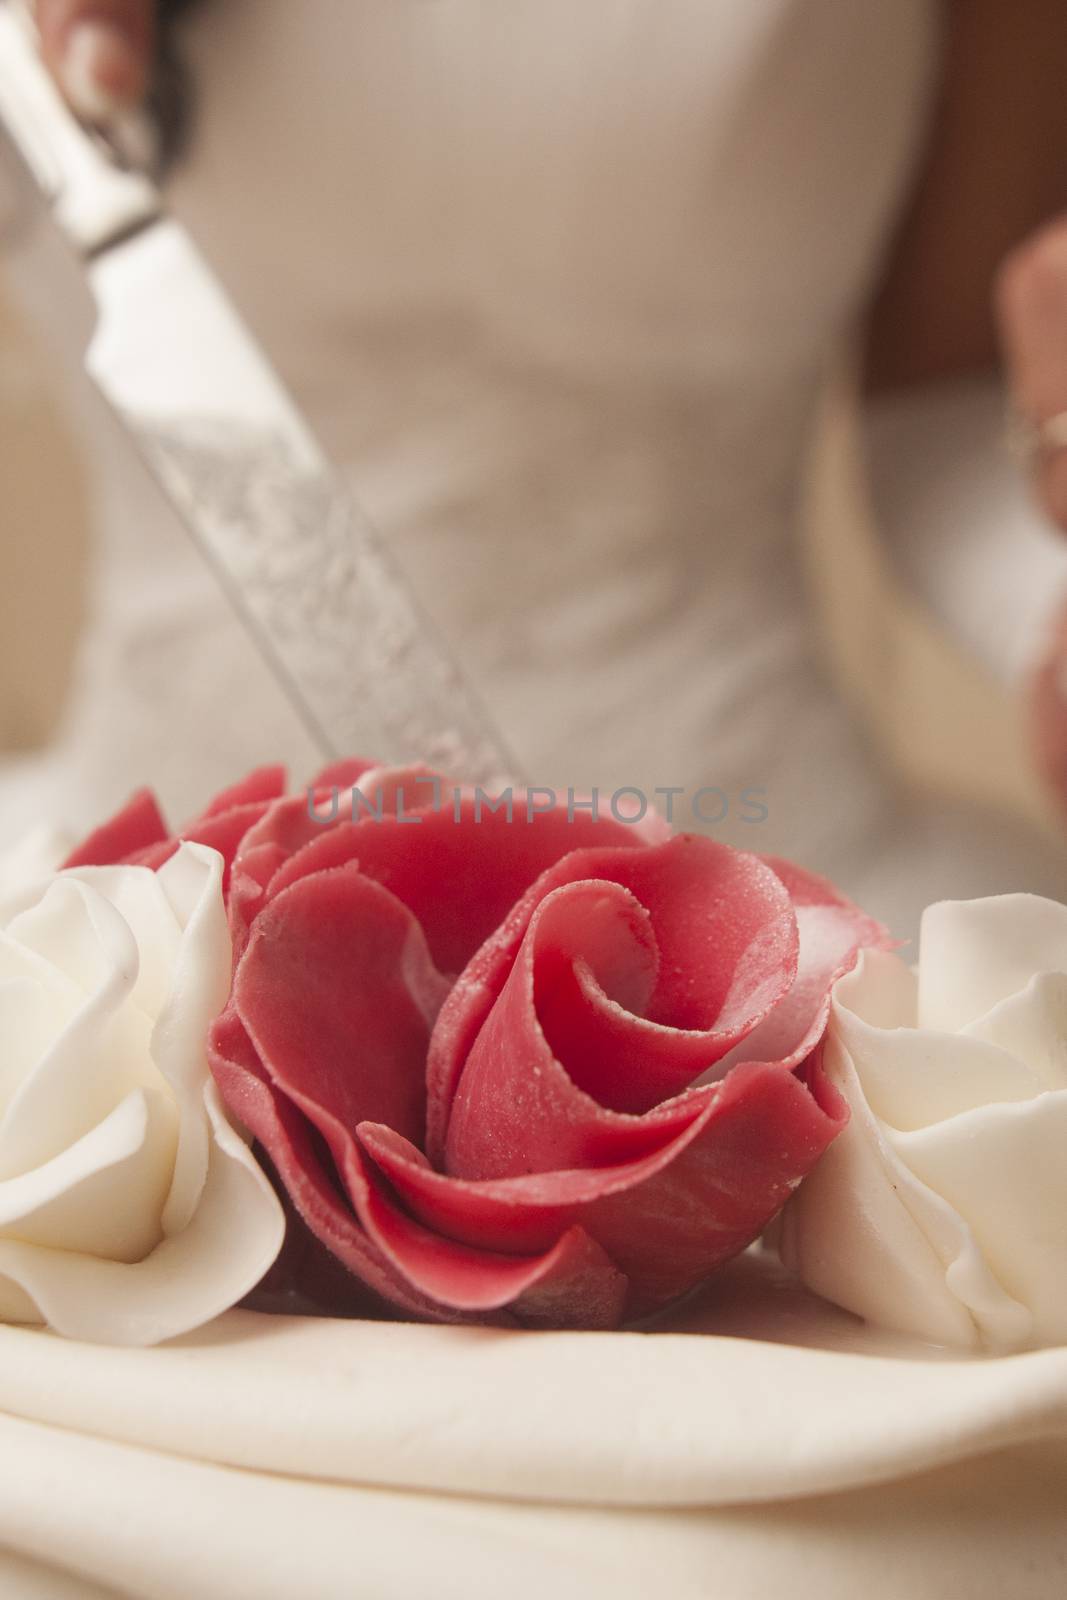 marzipan red rose on wedding cake